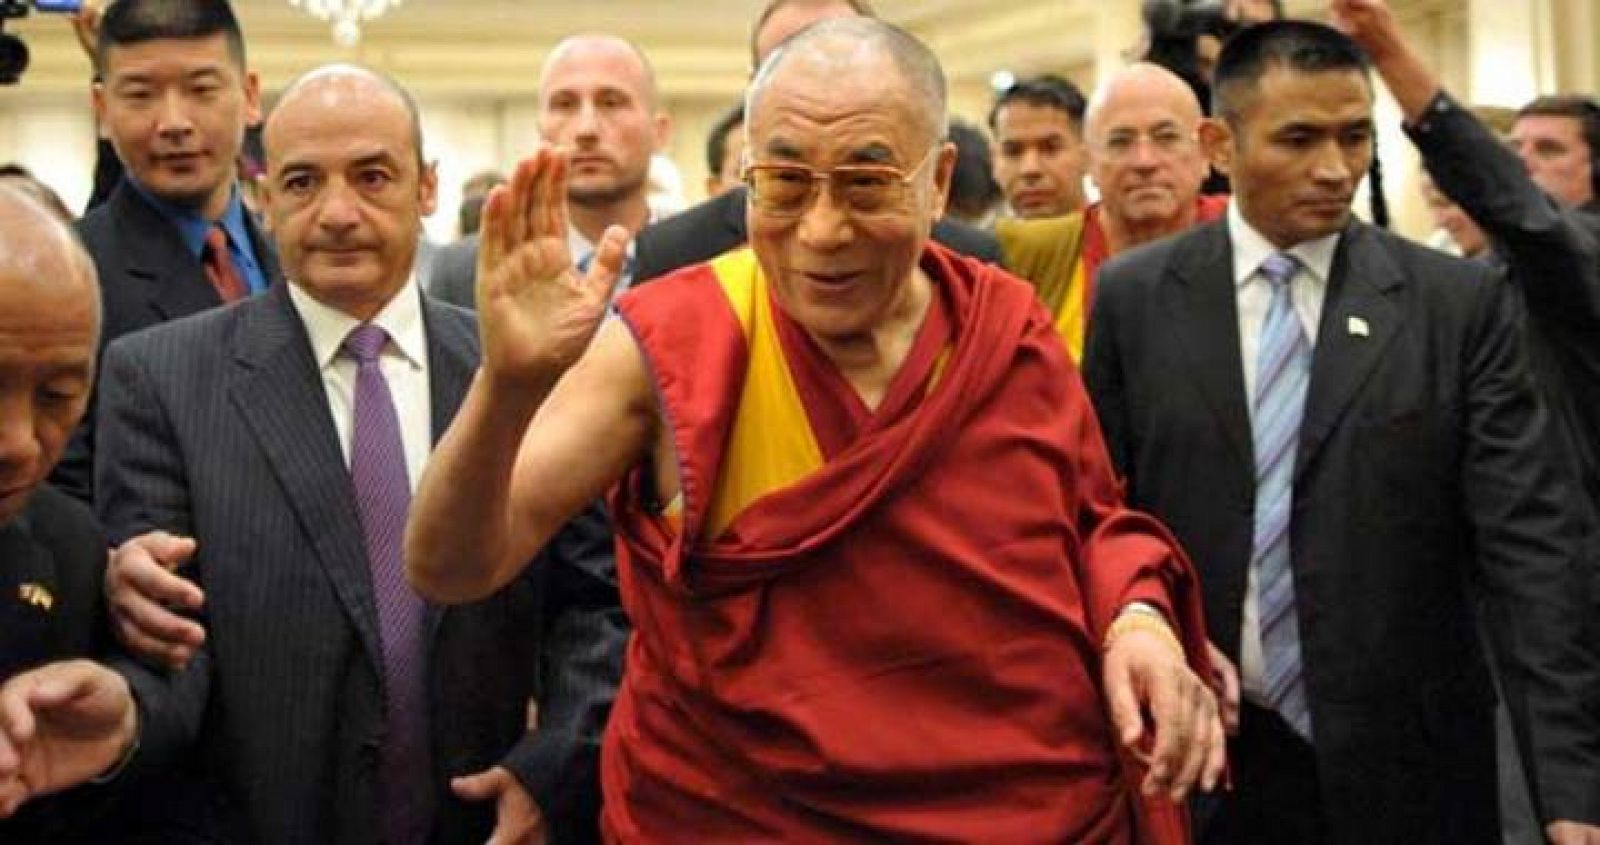 El  Dalai Lama, saluda a su llegada a la reunión mantenida con los miembros del Parlamento en el senado